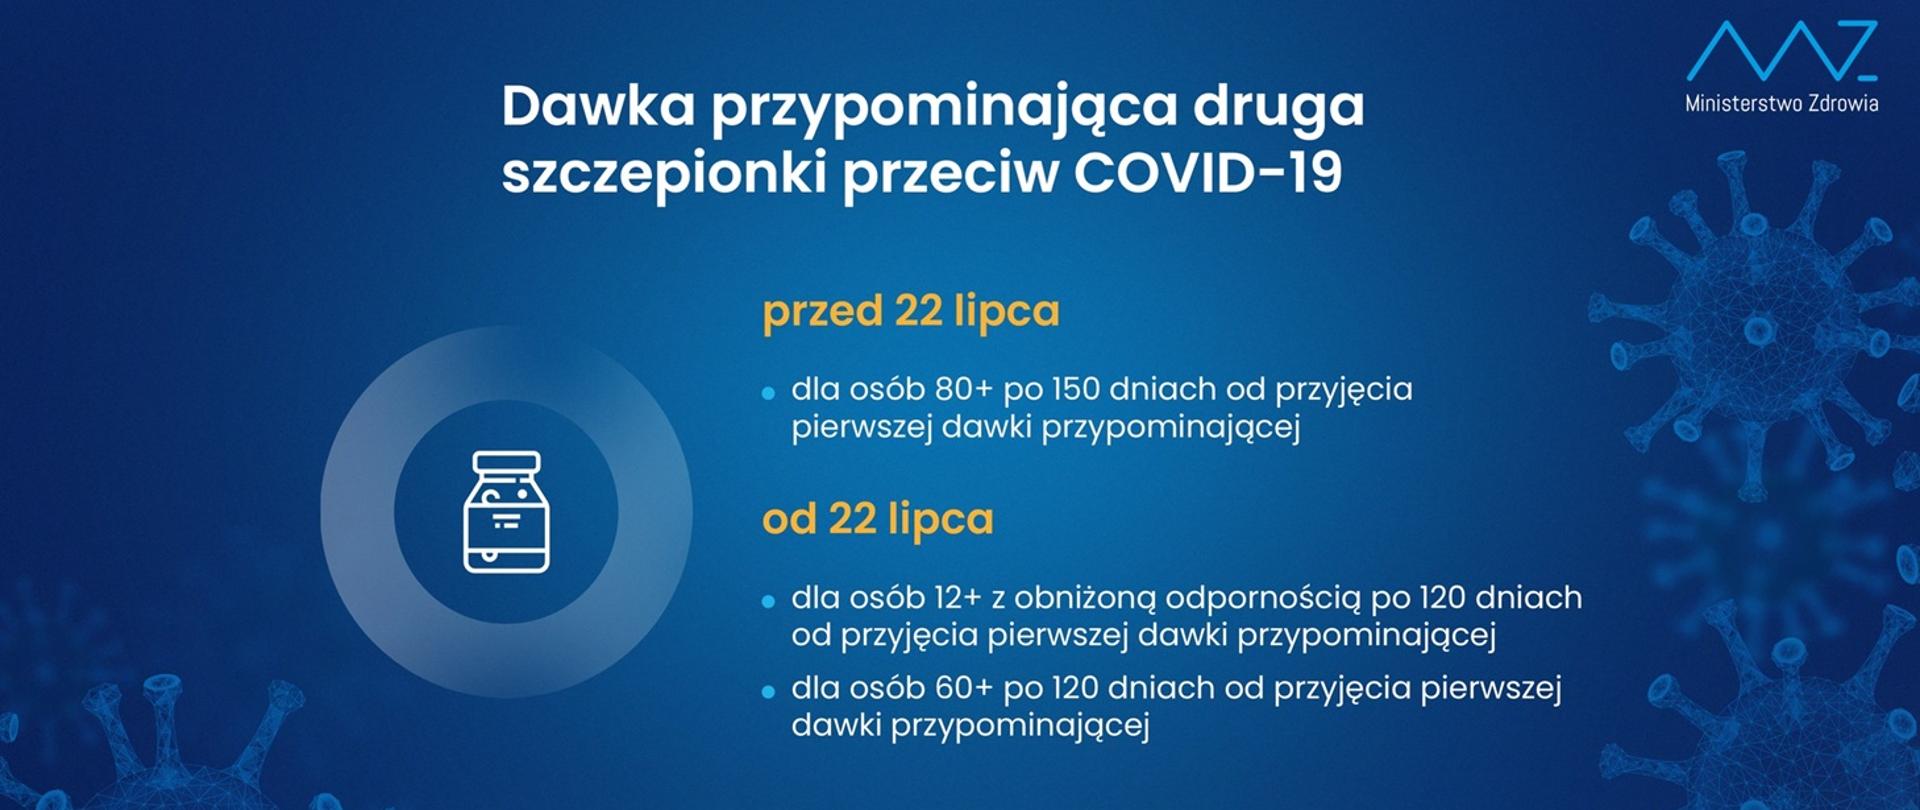 Druga dawka przypominająca szczepienia przeciwko COVID-19 